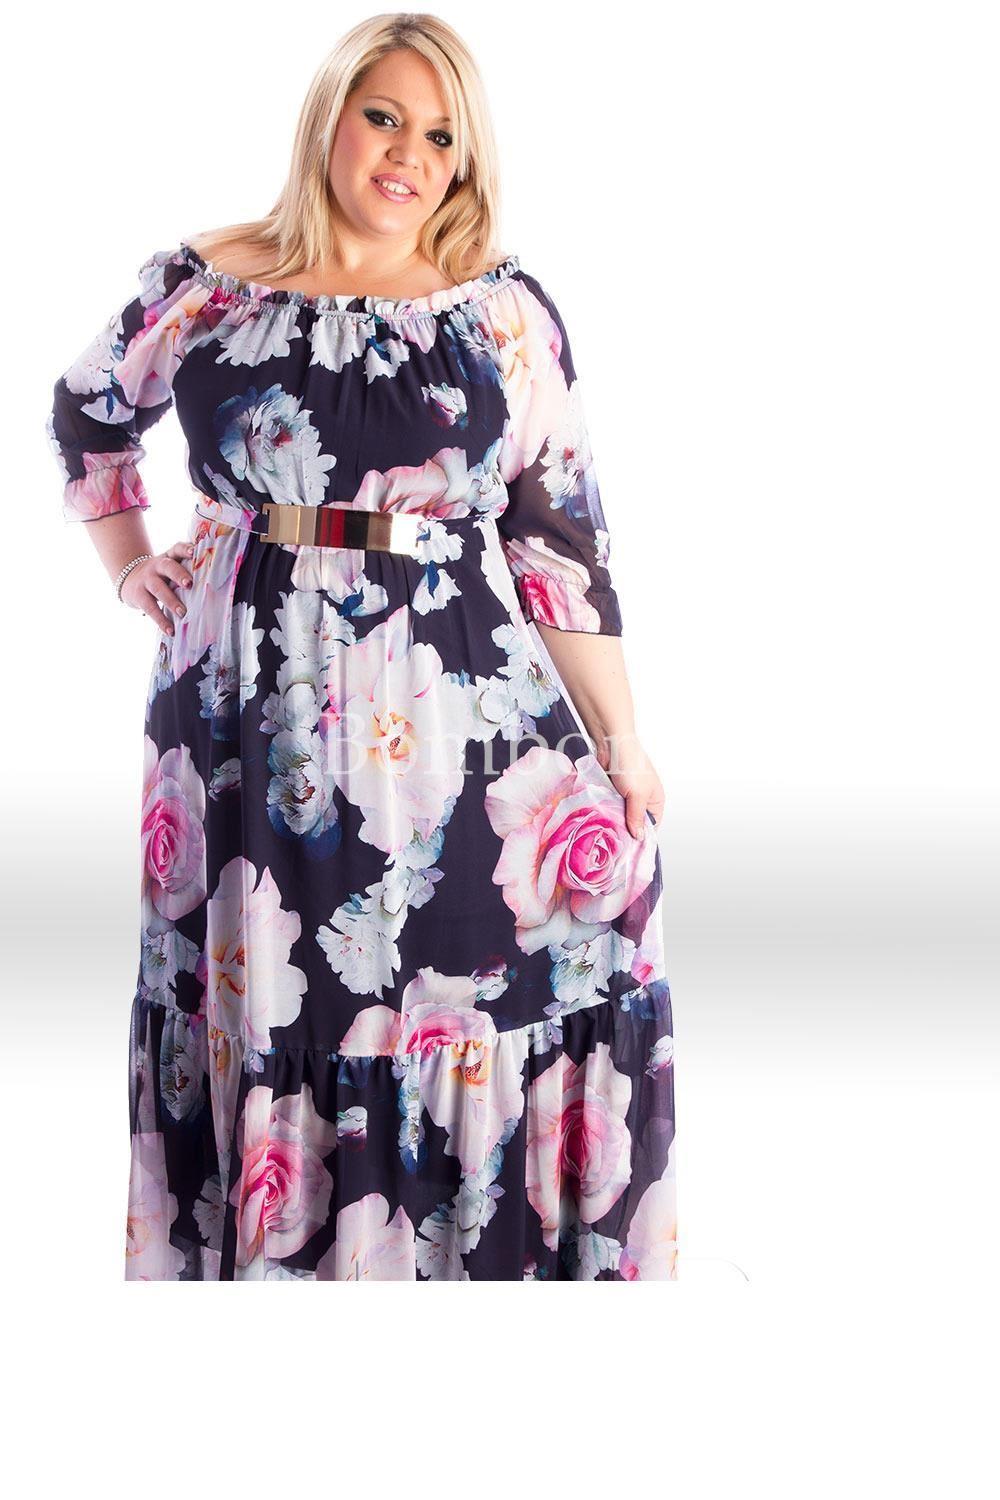 Vestido largo con mangas floral color marino y rosa , rf 5009 talla grande desde 46 hasta la 64 - Imagen 2